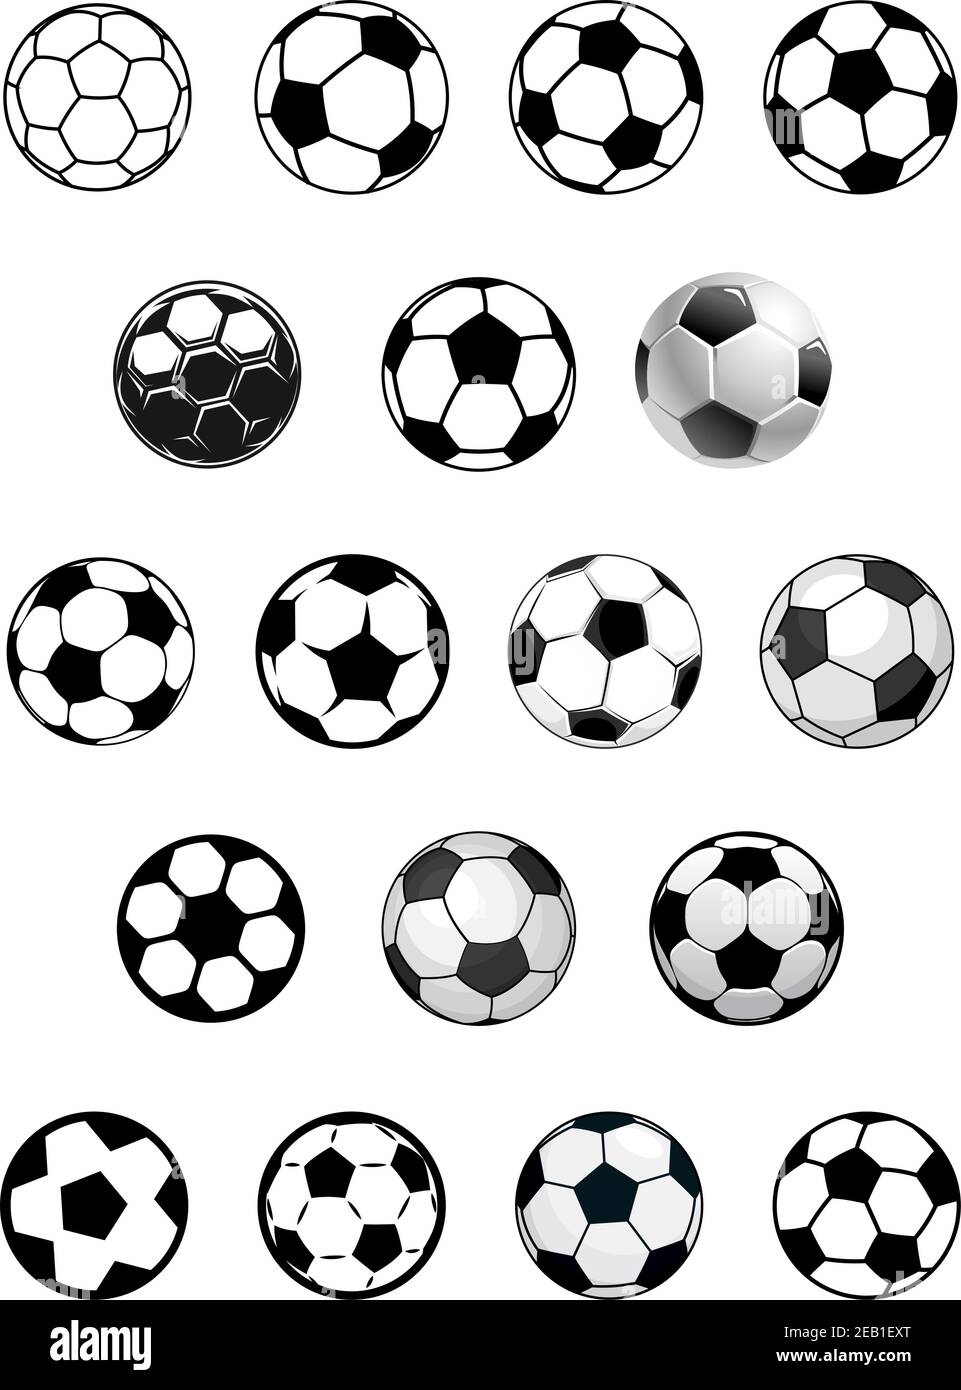 Ballons de football noir et blanc ou ballons de football noirs et blancs isolés sur fond blanc pour le design héraldique ou sportif des emblèmes Illustration de Vecteur